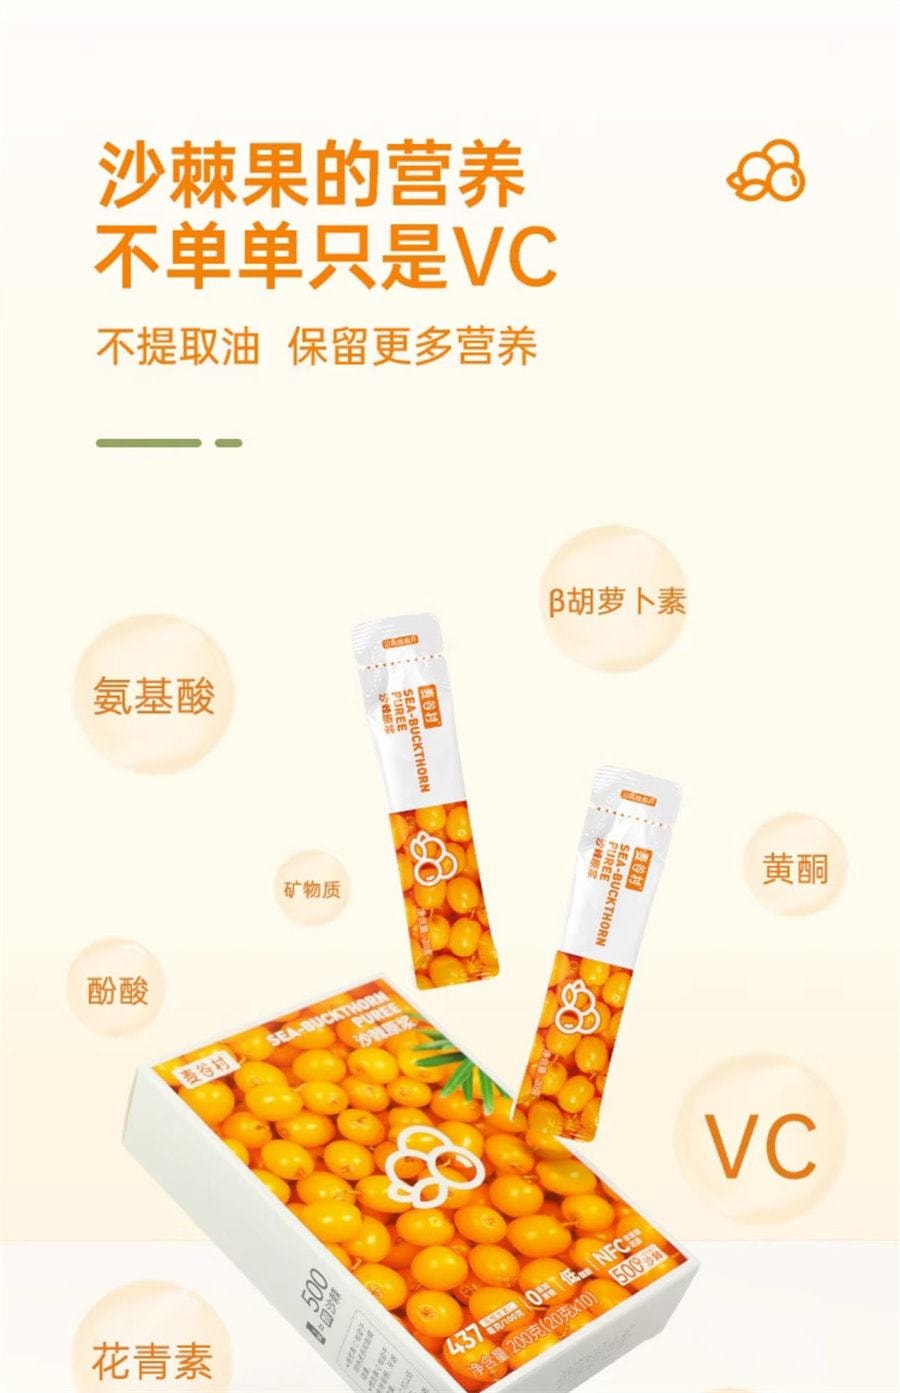 【中国直邮】麦谷村 沙棘原浆NFC鲜榨沙棘汁液小果维生素C 200g/盒(小红书种草推荐)